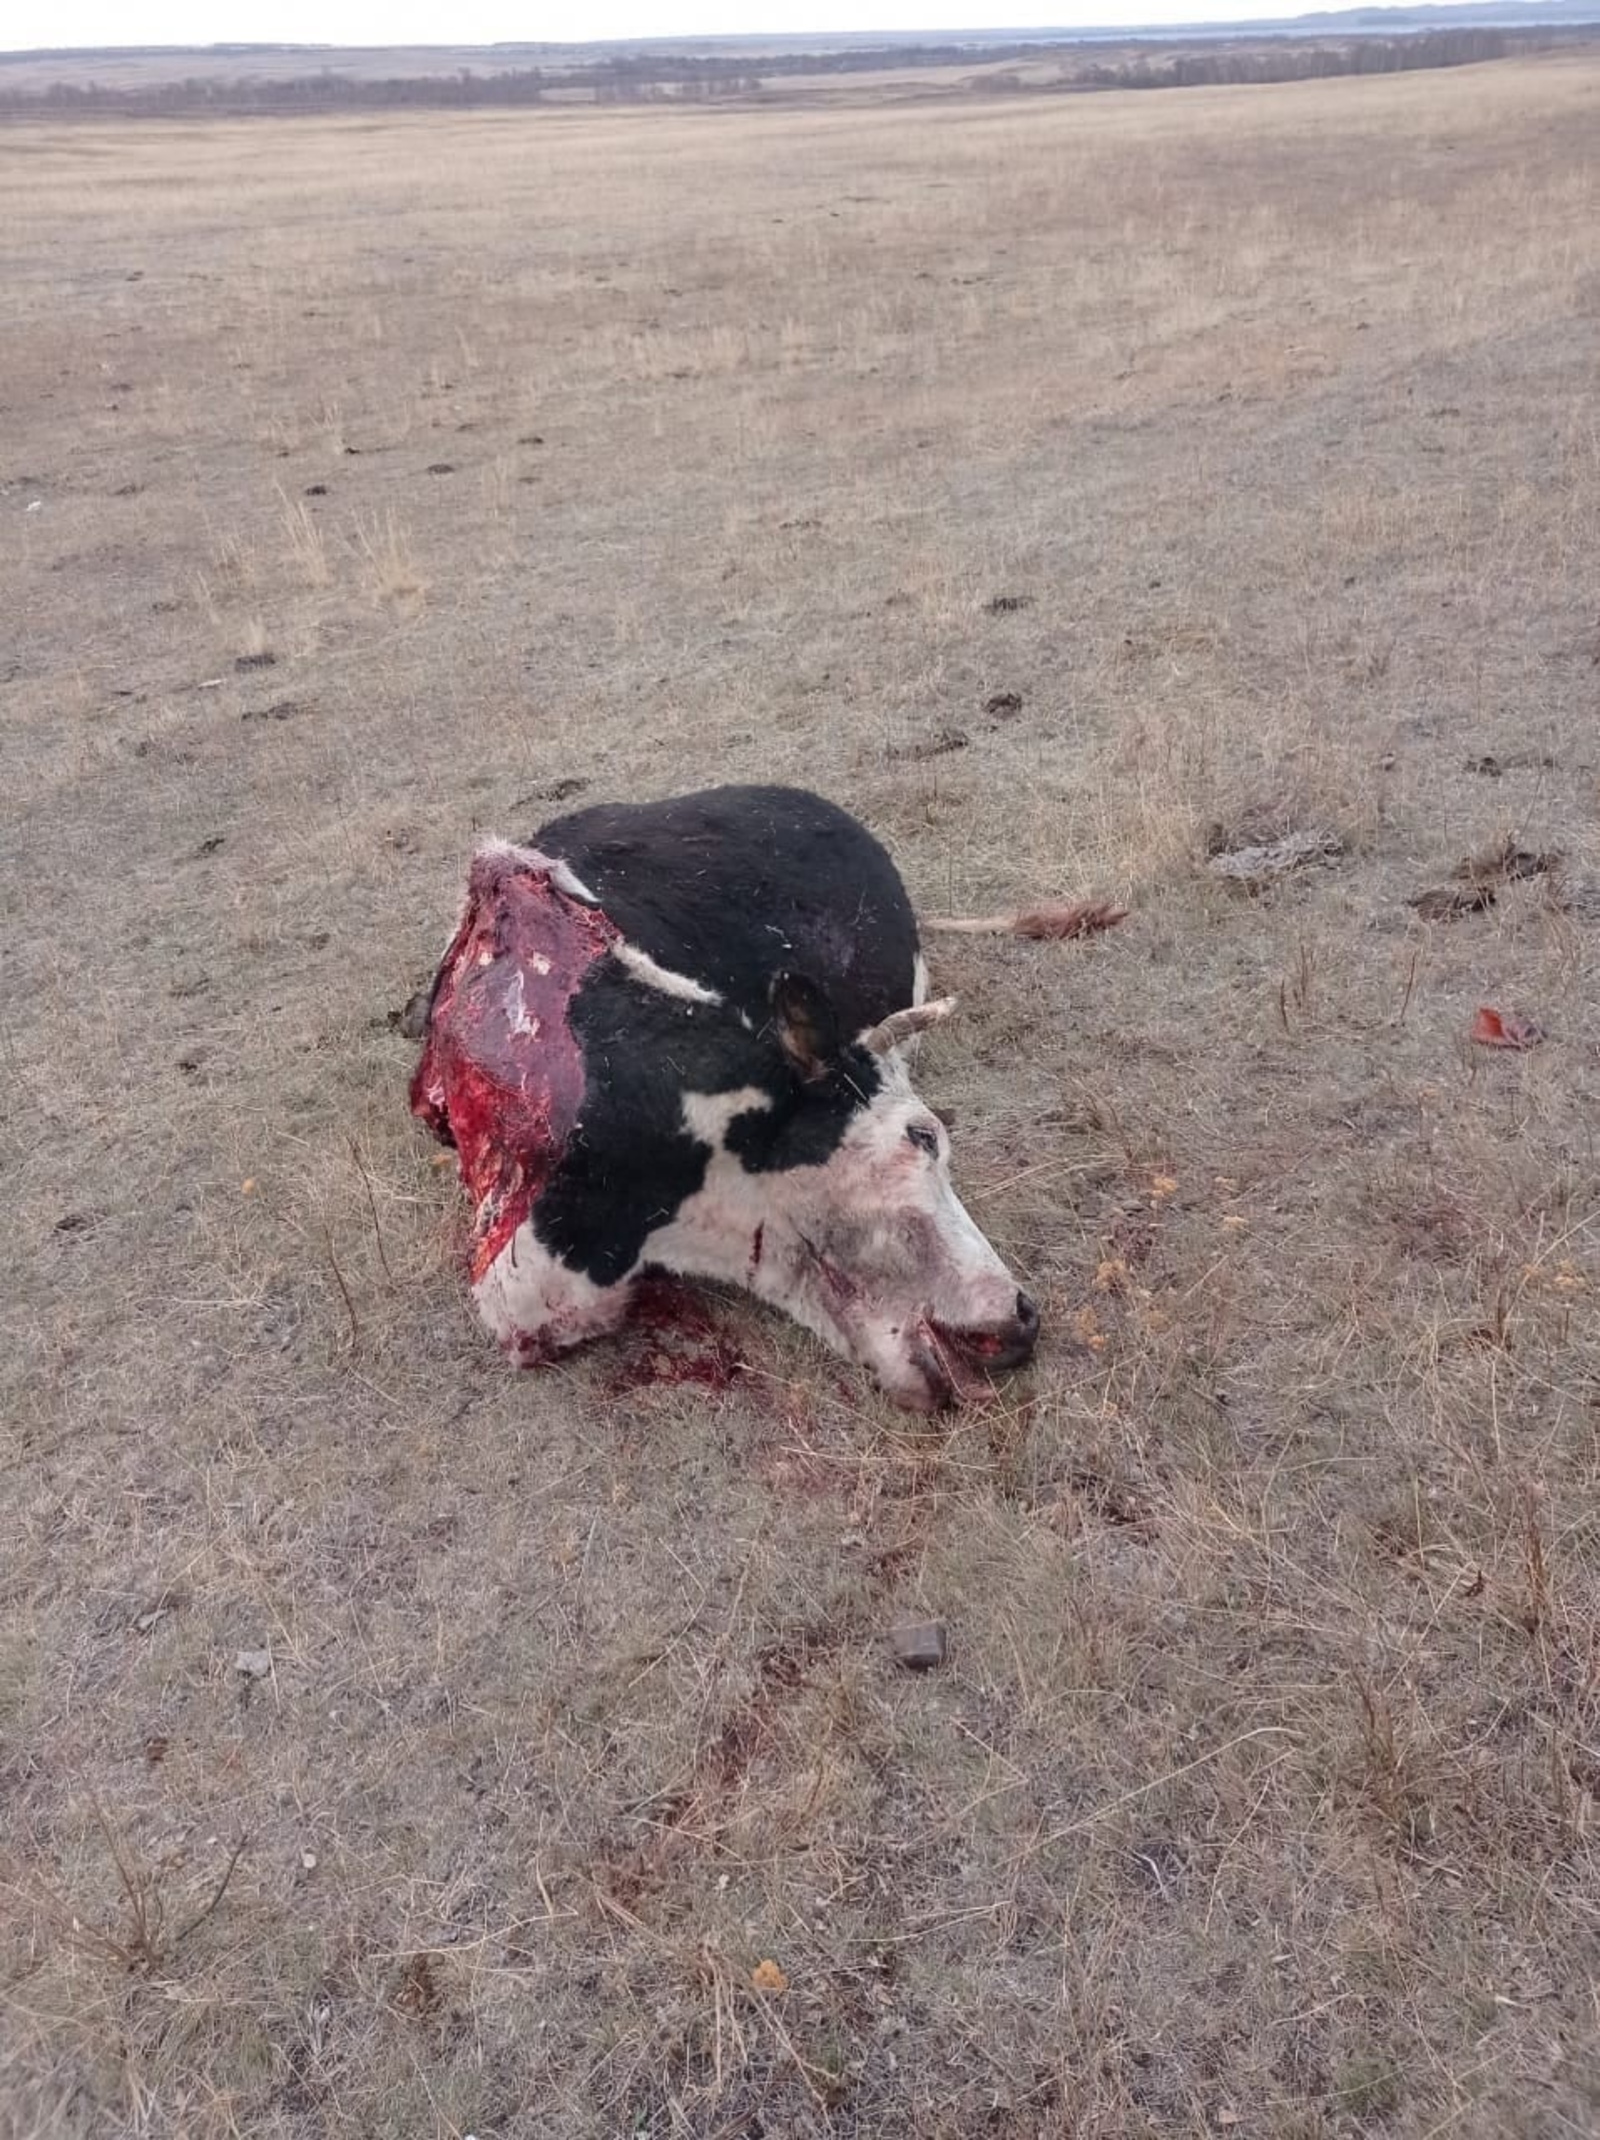 УЖАСАЮЩИЙ СЛУЧАЙ: в одной из деревень Башкирии "охотники" застрелили, разделали и увезли домашний скот